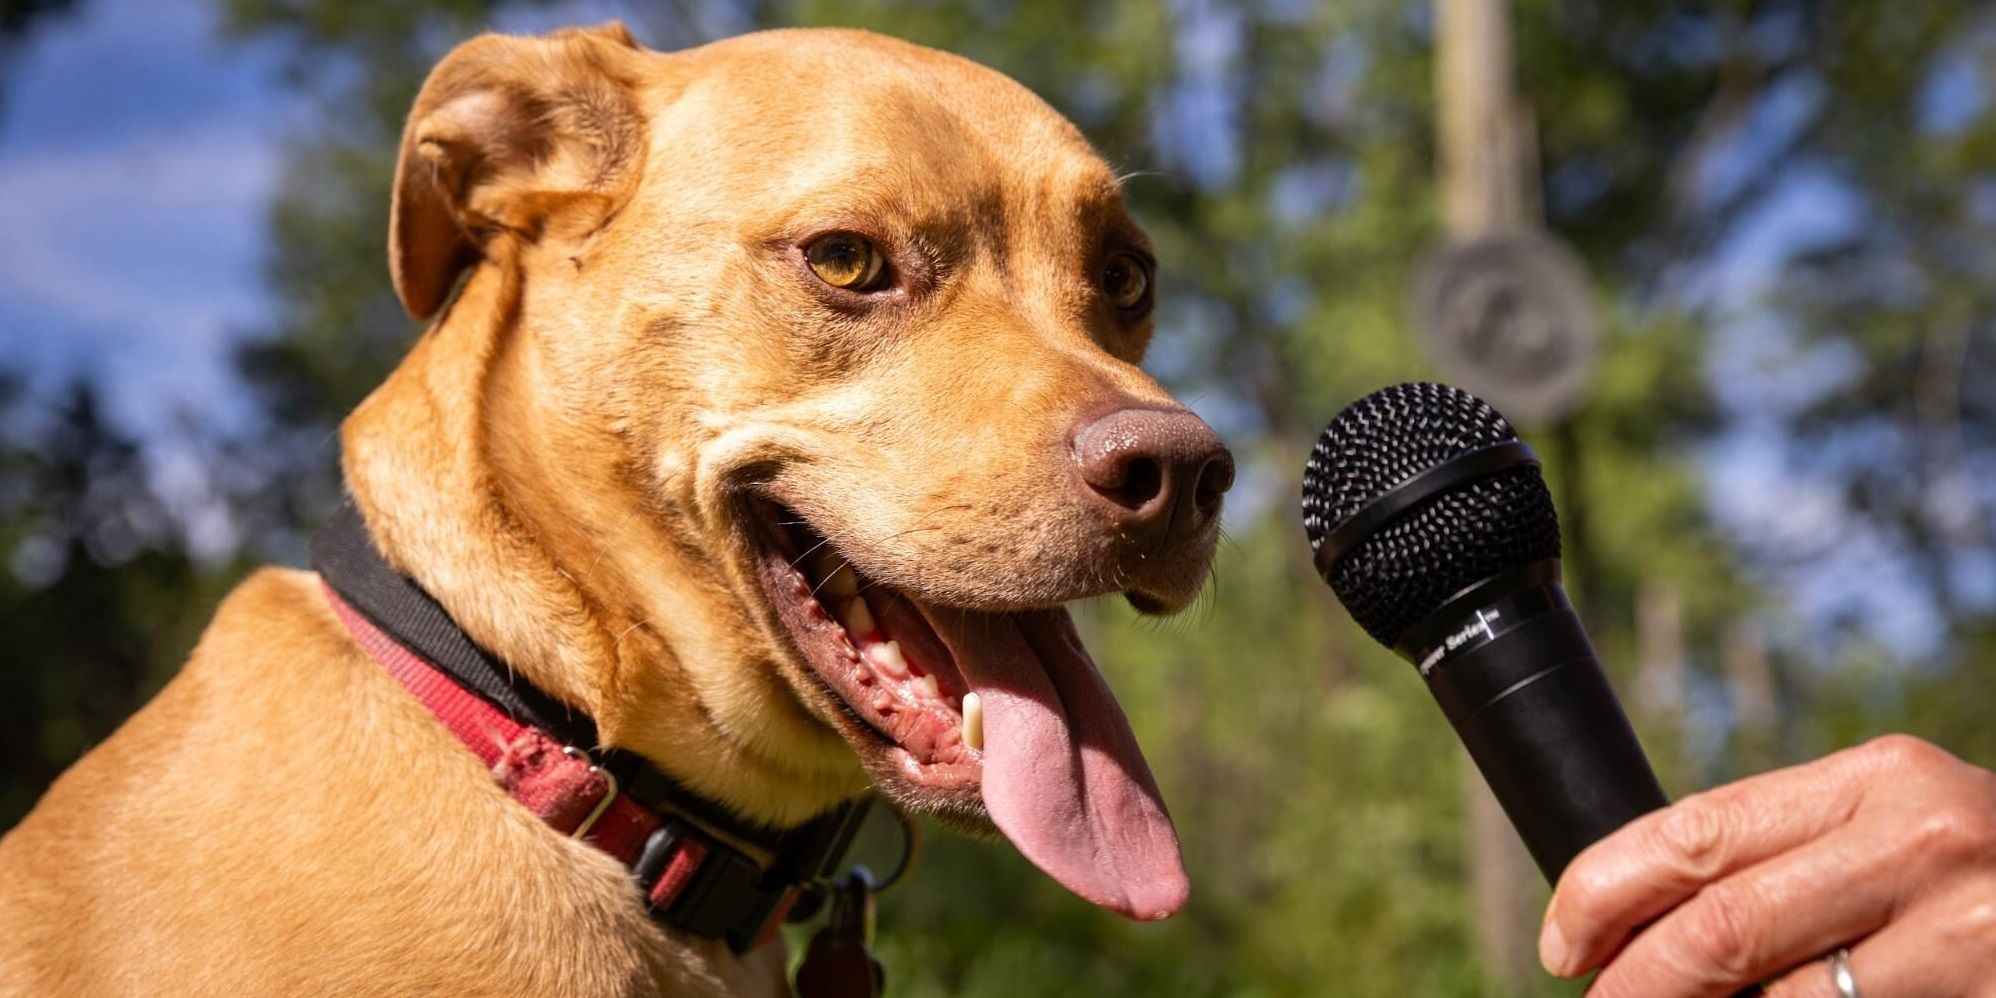 Ladridos con sentido: para entender el lenguaje canino, los investigadores entrenan a la IA con humanos